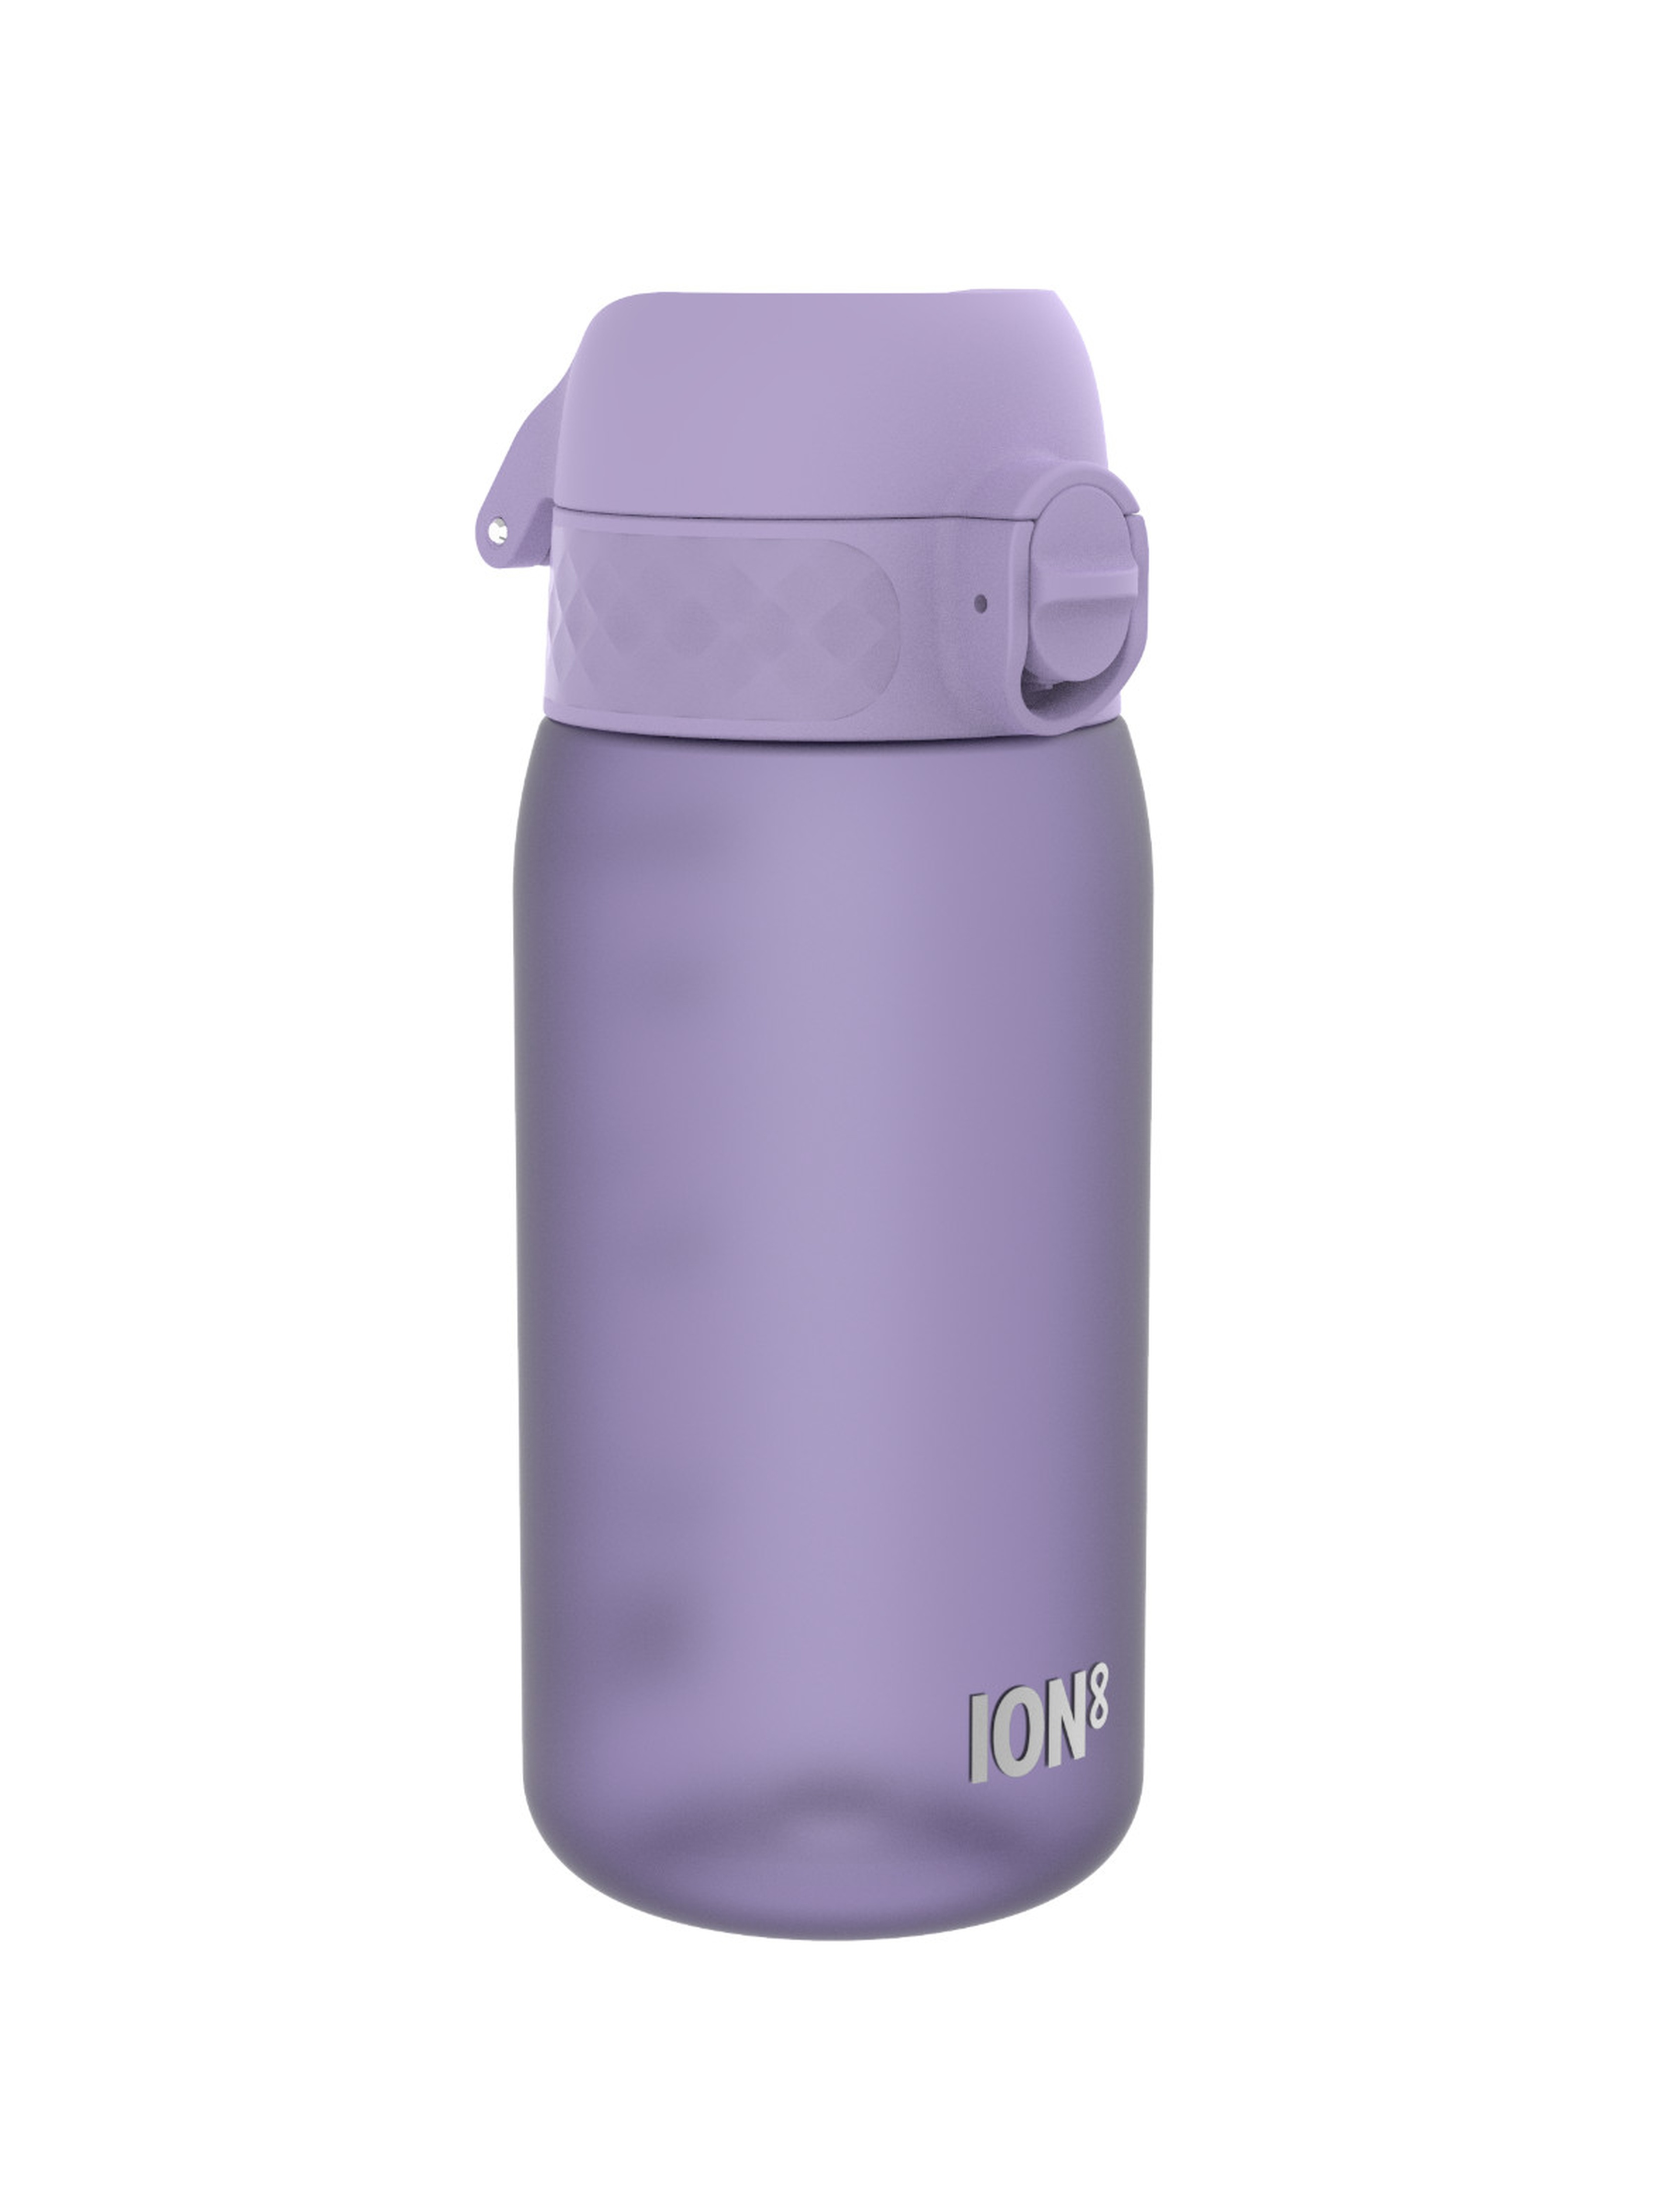 Oryginalna butelka na wodę BPA Free 0,4l - fioletowa